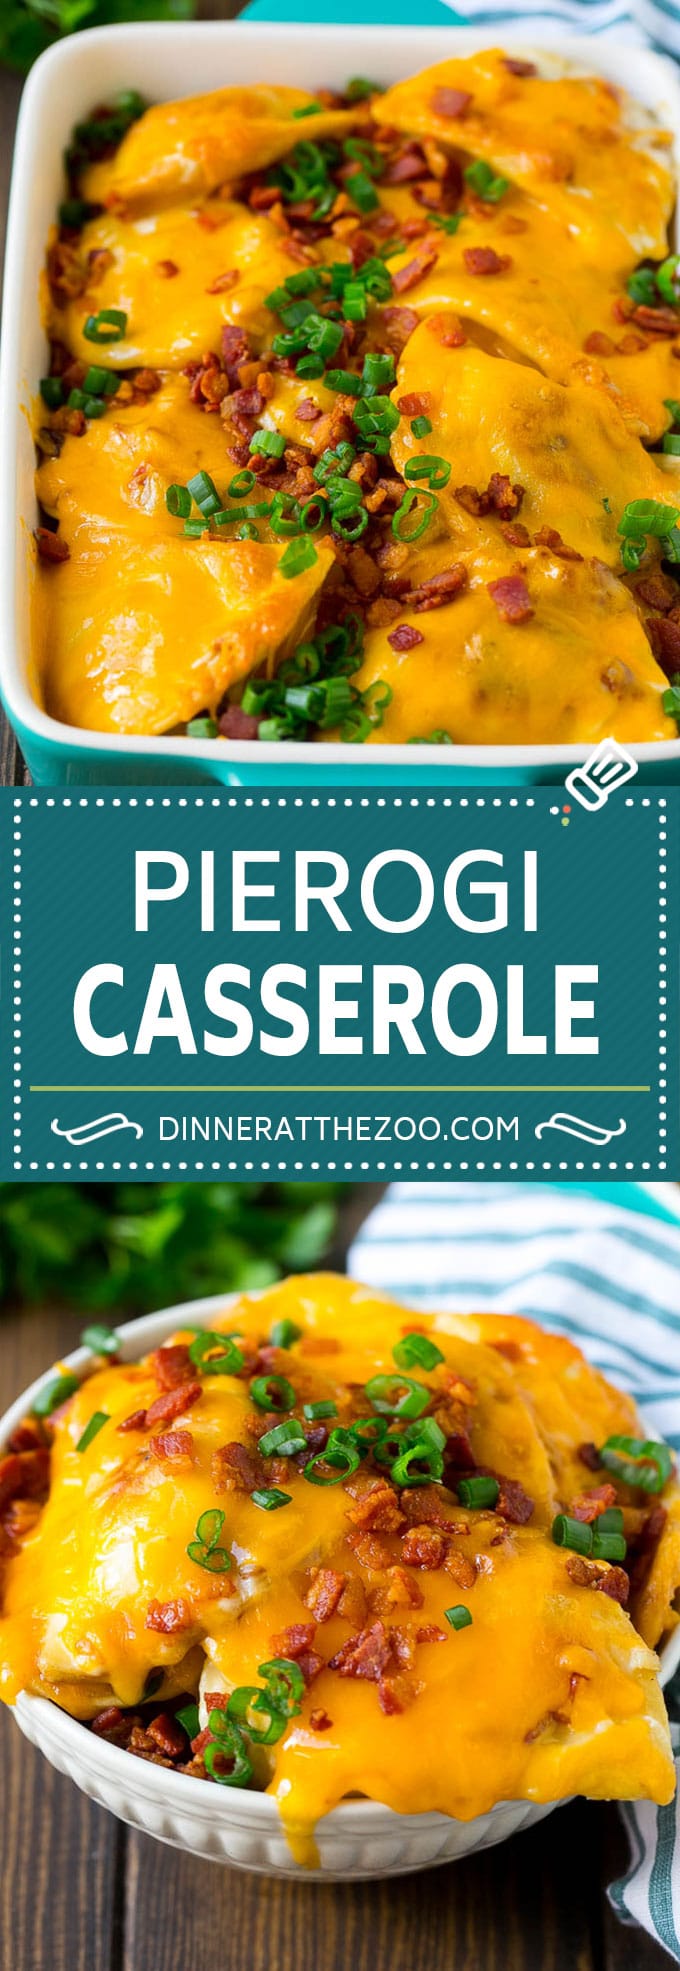 Pierogi Casserole Recipe | Potato Casserole #pierogis #casserole #bacon #cheddar #dinner #dinneratthezoo